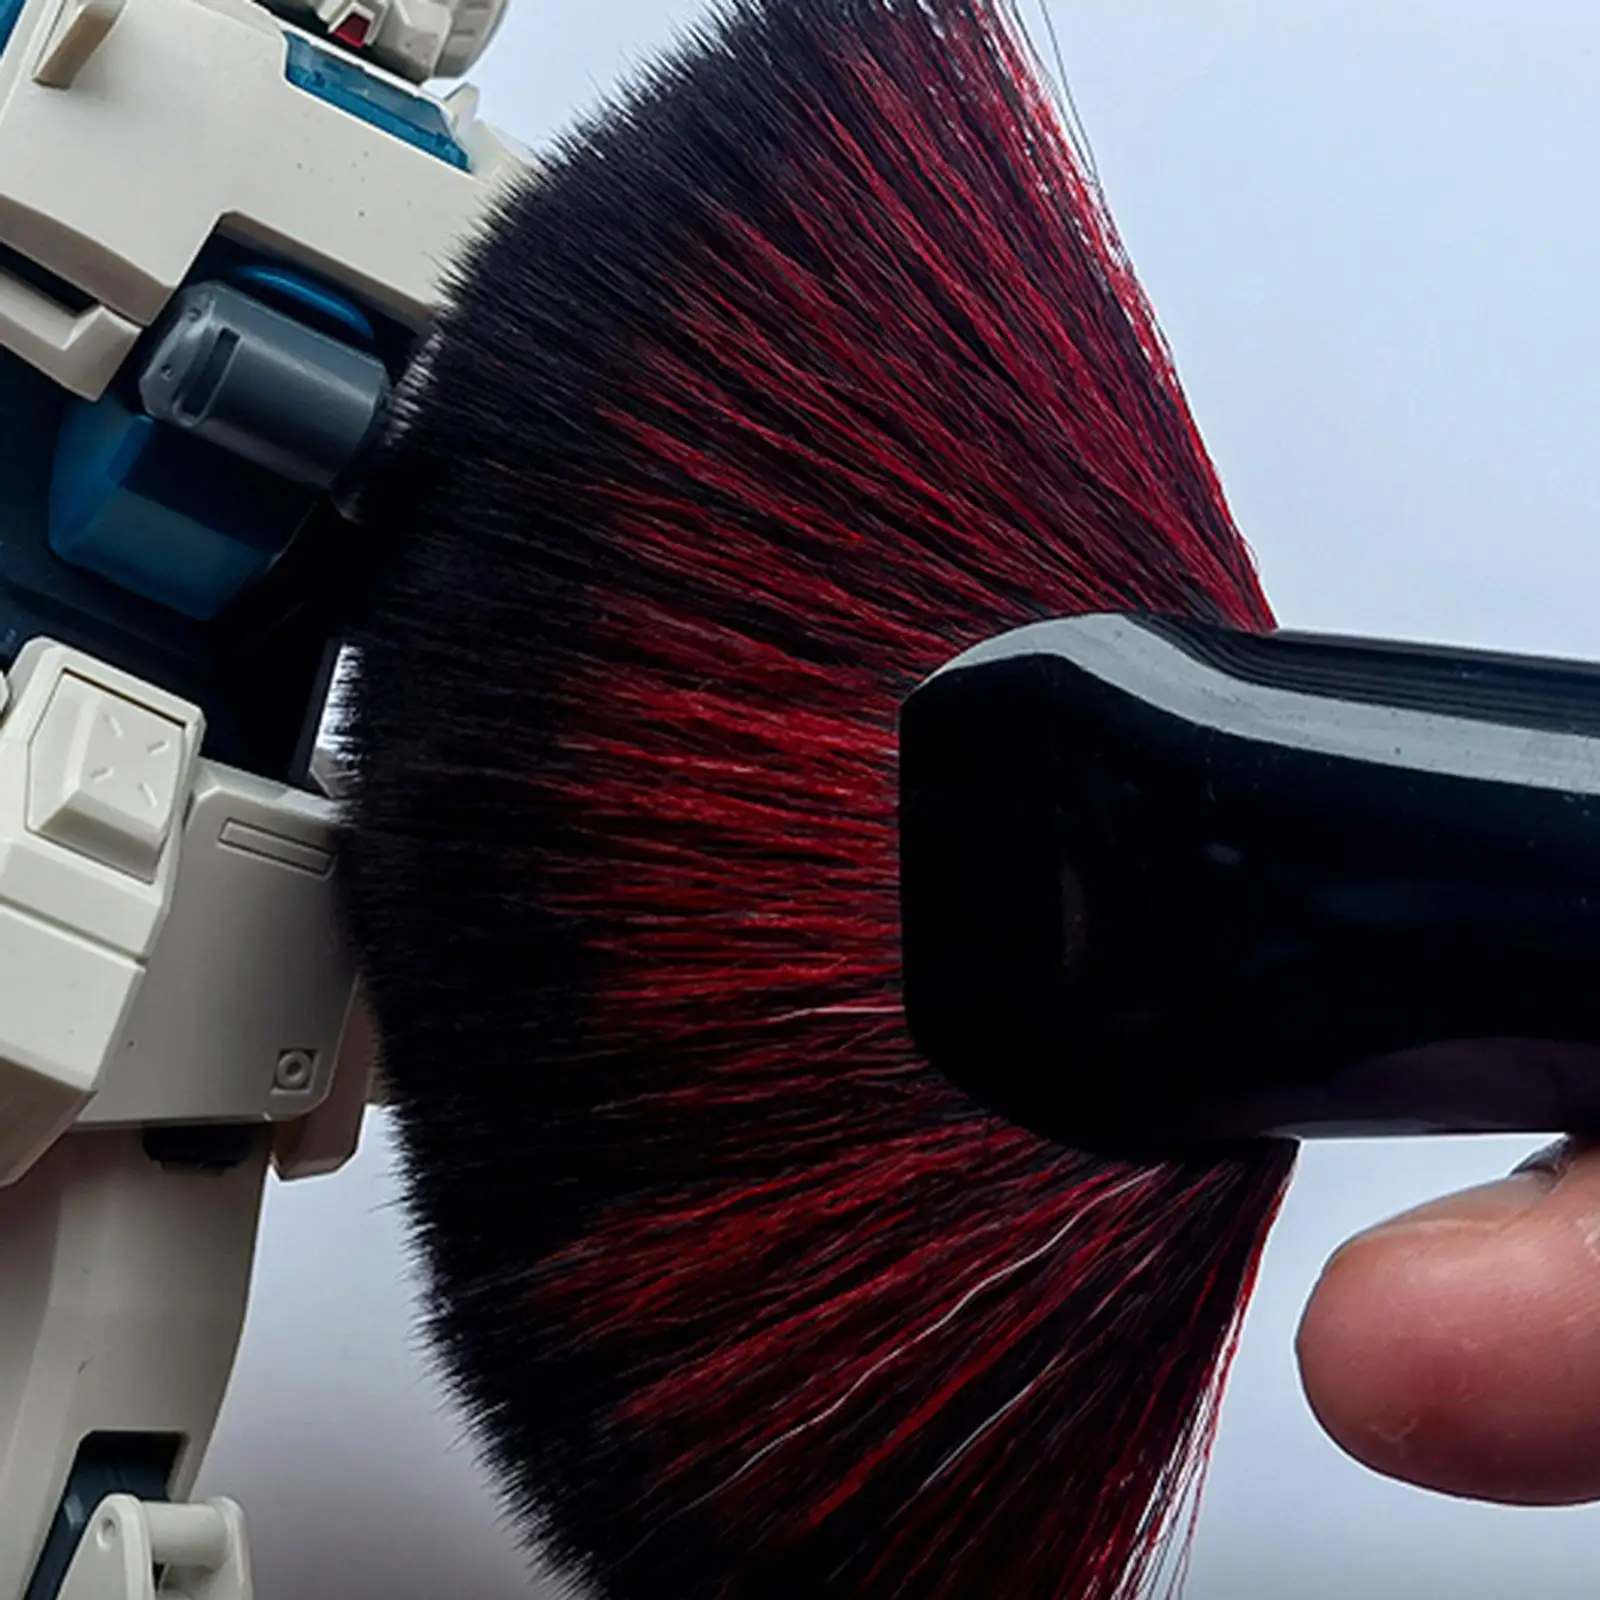 Model Cleaning Brush Doll Figure Dust Brush Cleaner Brush for Statues DIY